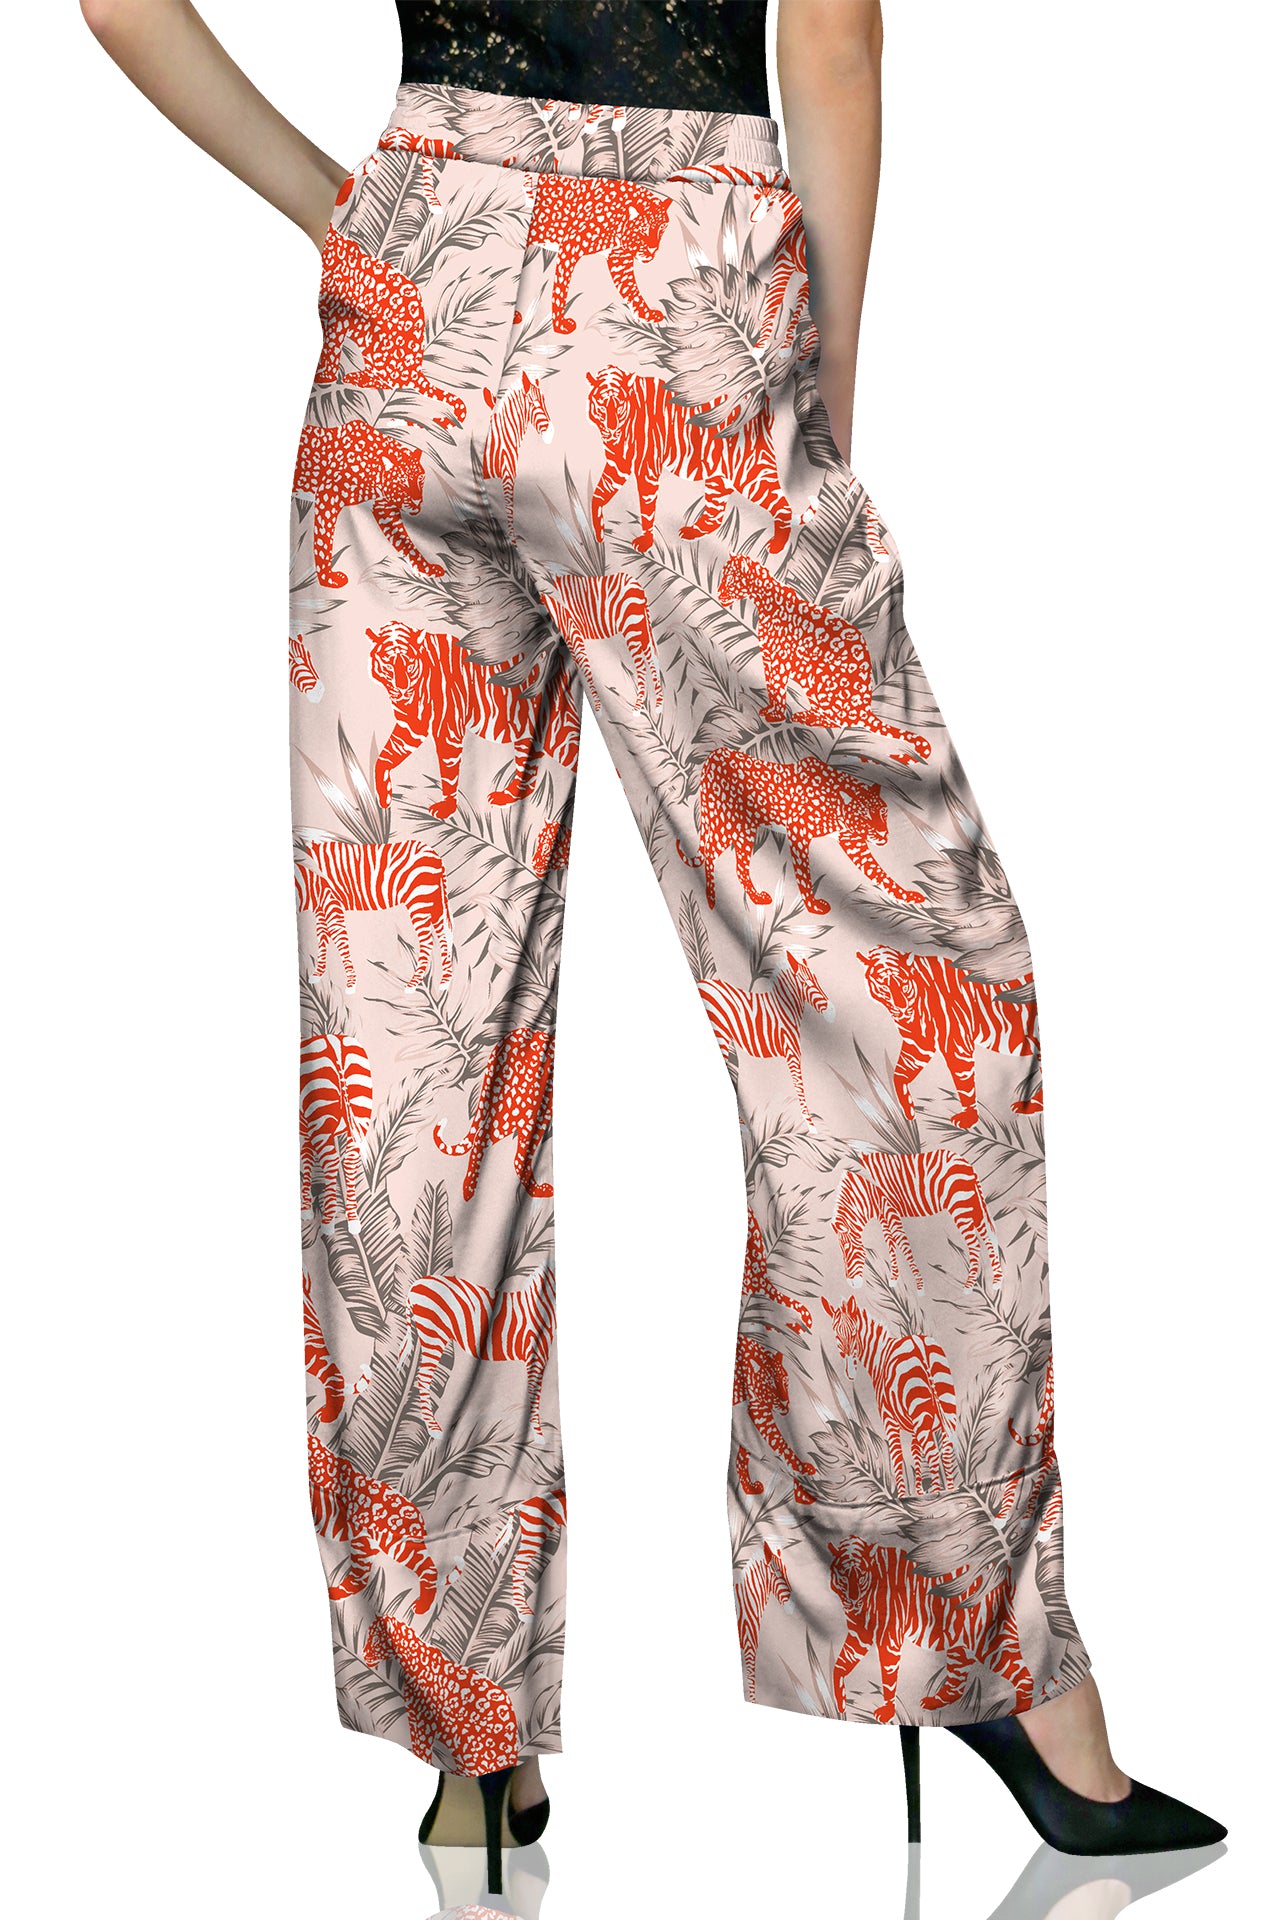 2023 Designer Silk Pants in Orange - Straight Leg Pants for Women